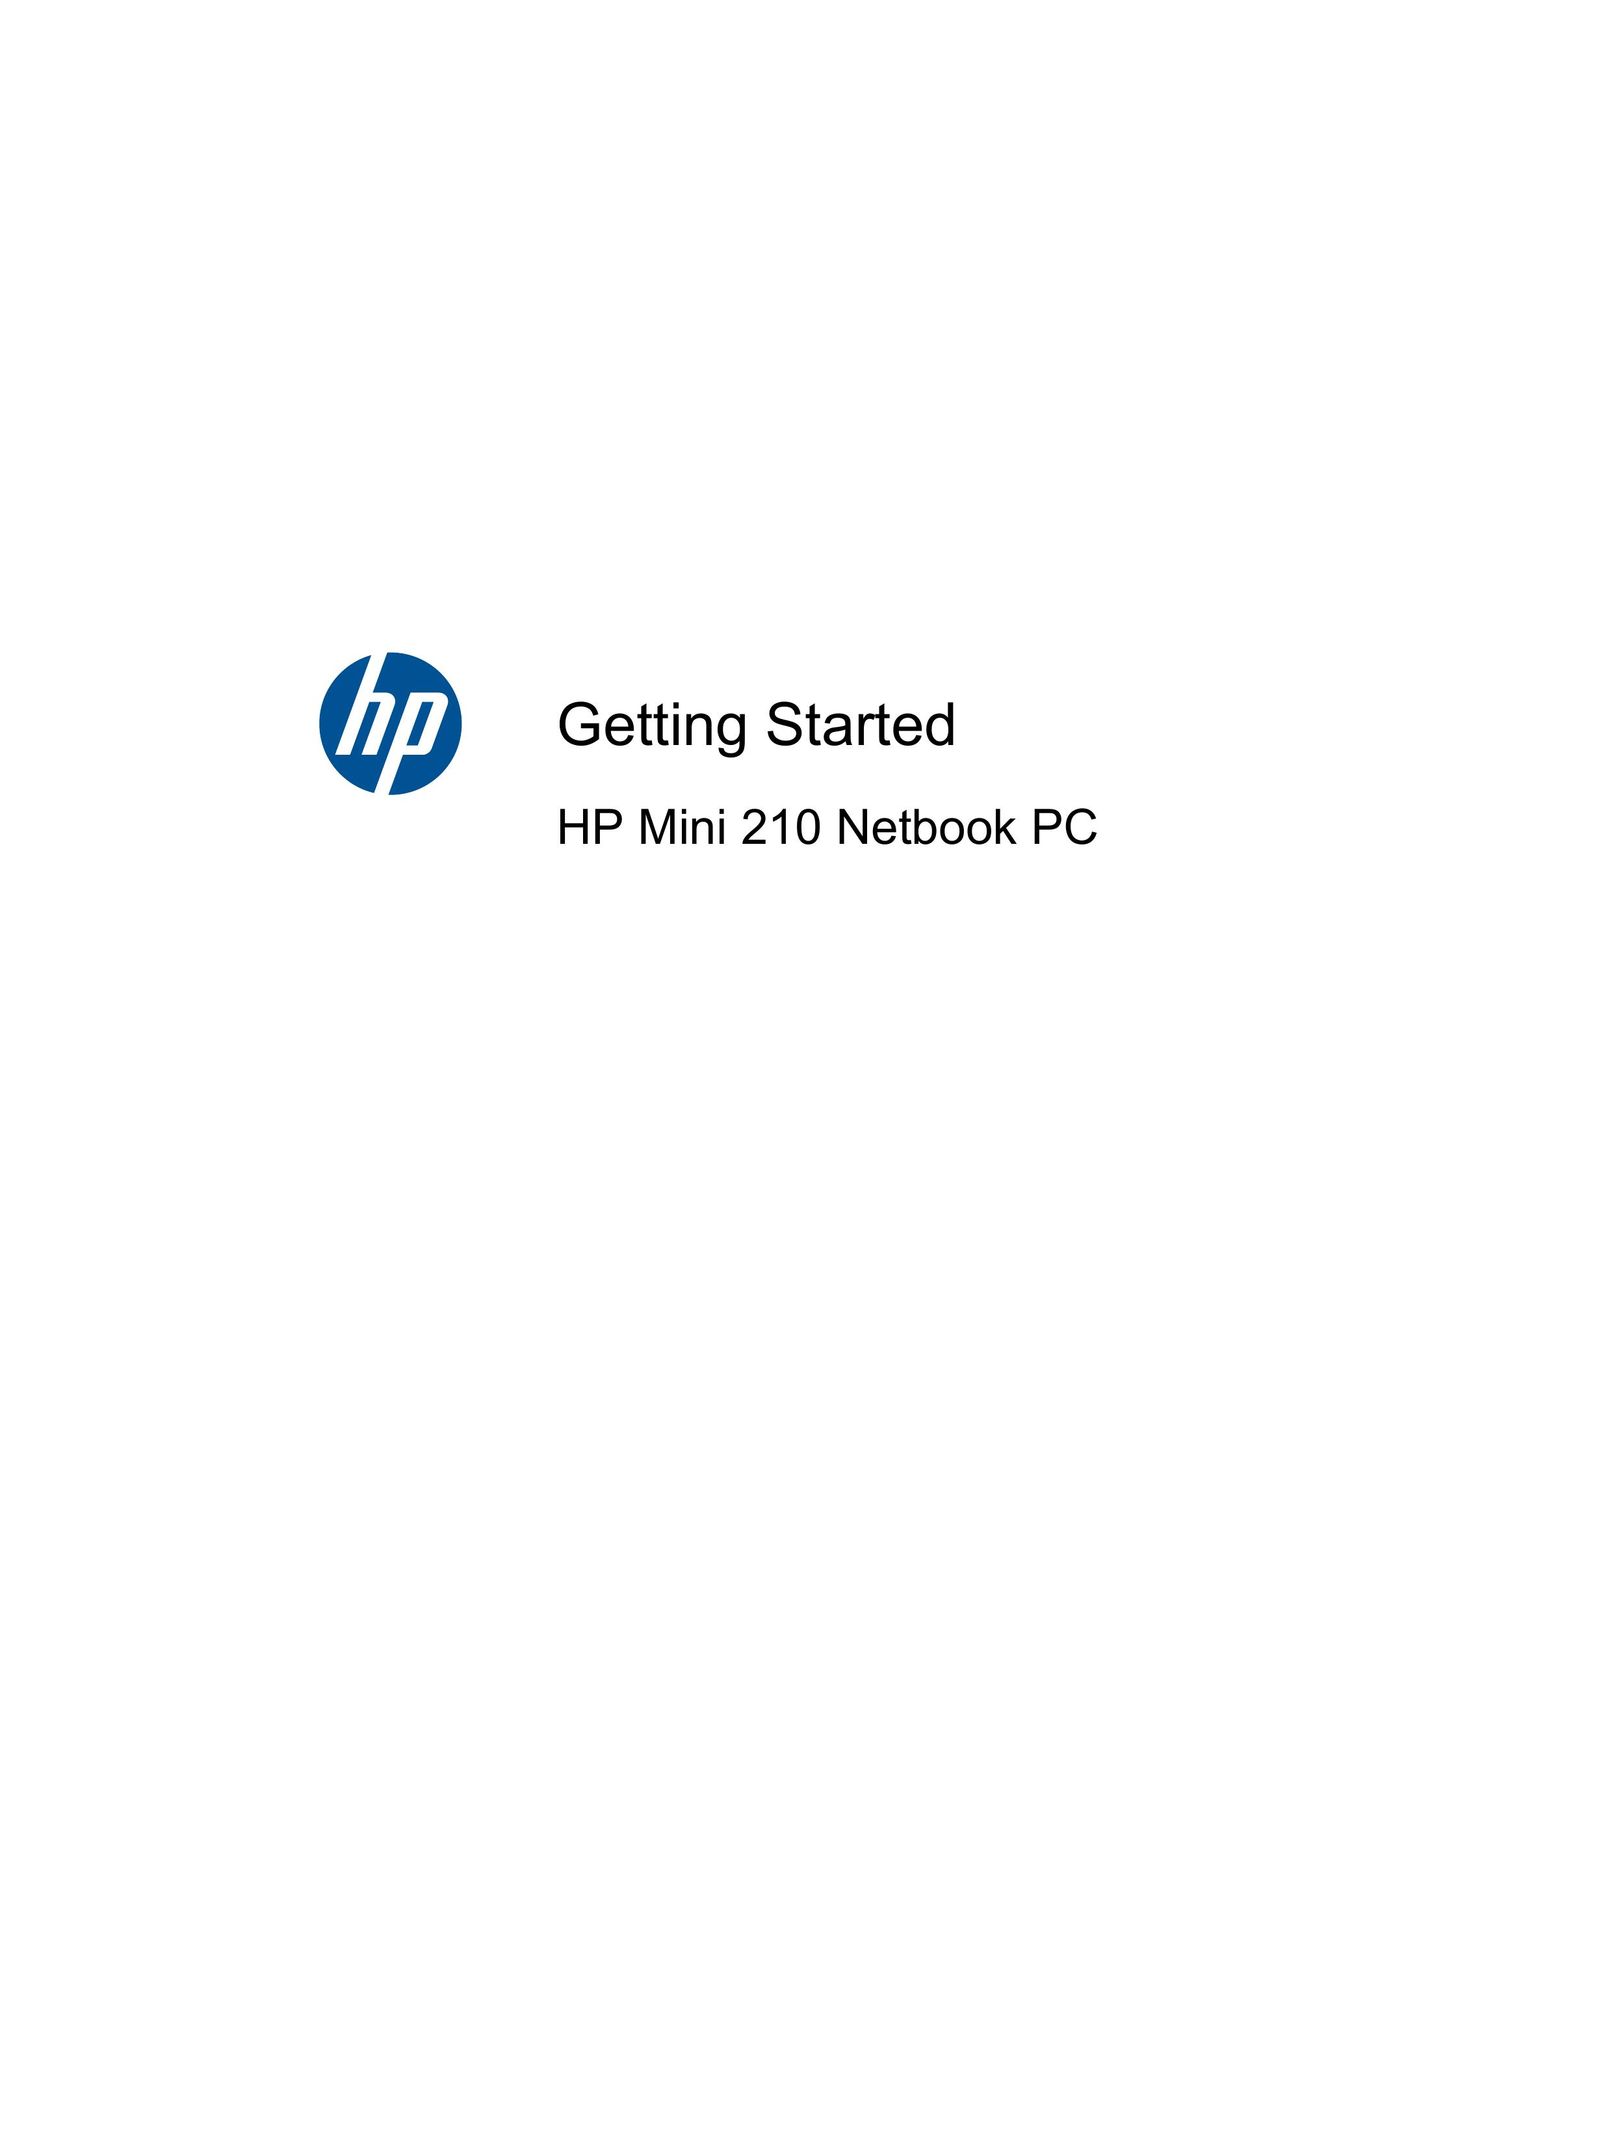 HP (Hewlett-Packard) 210 Laptop User Manual